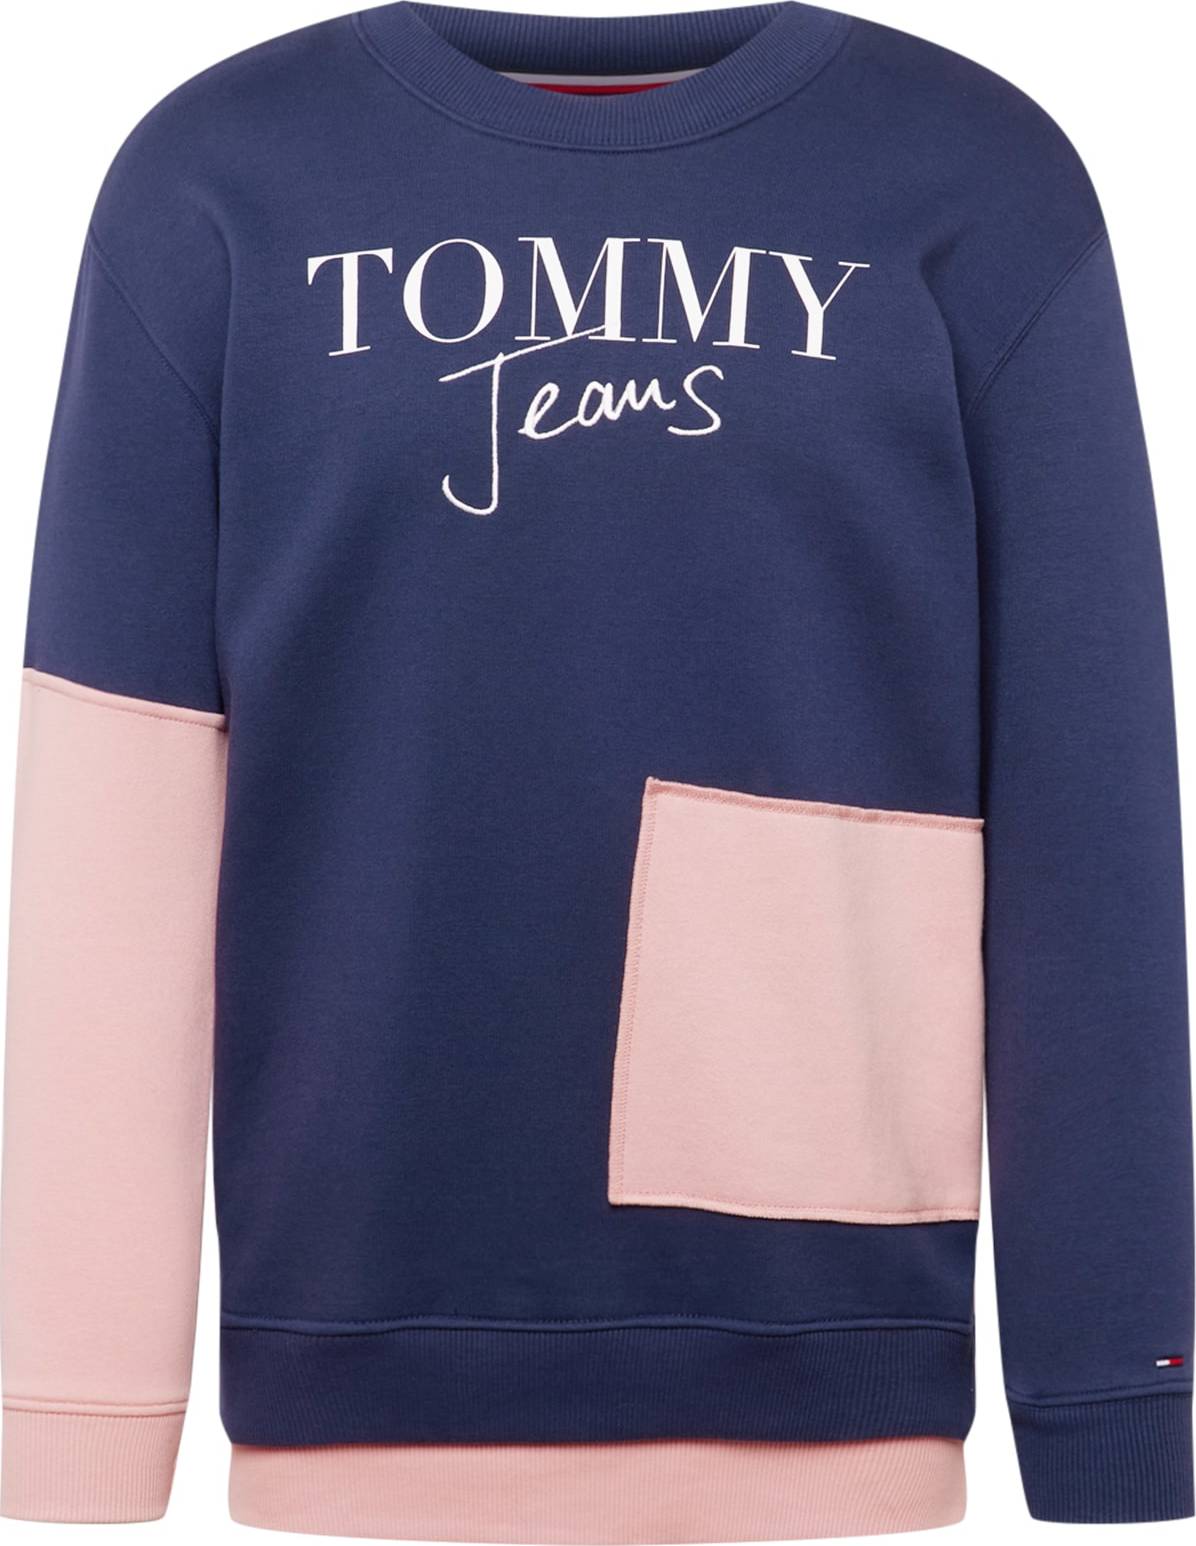 Mikina Tommy Jeans marine modrá / růžová / bílá